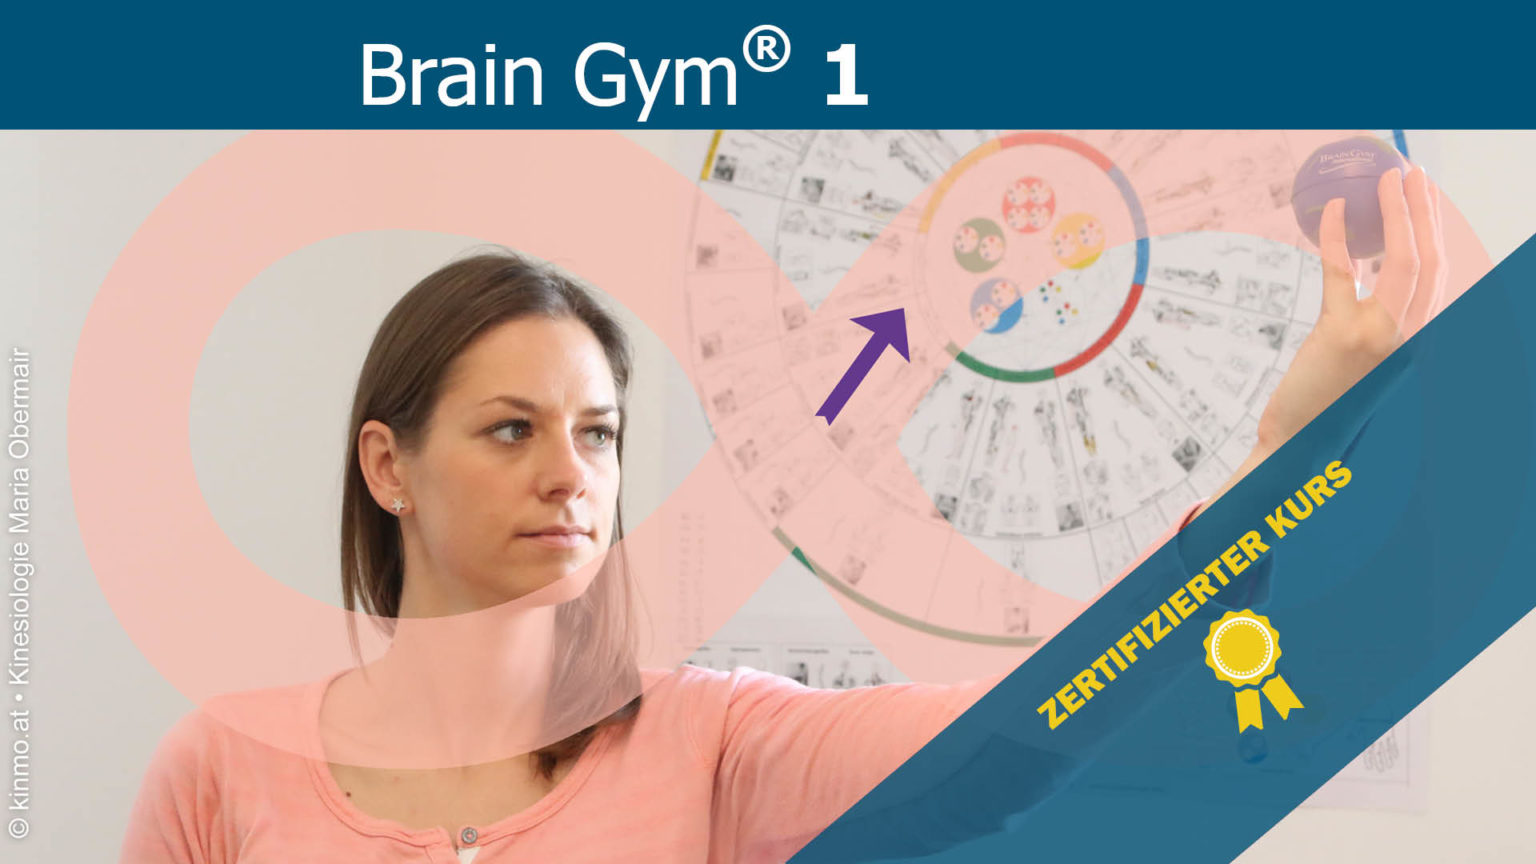 BG -Brain Gym 1